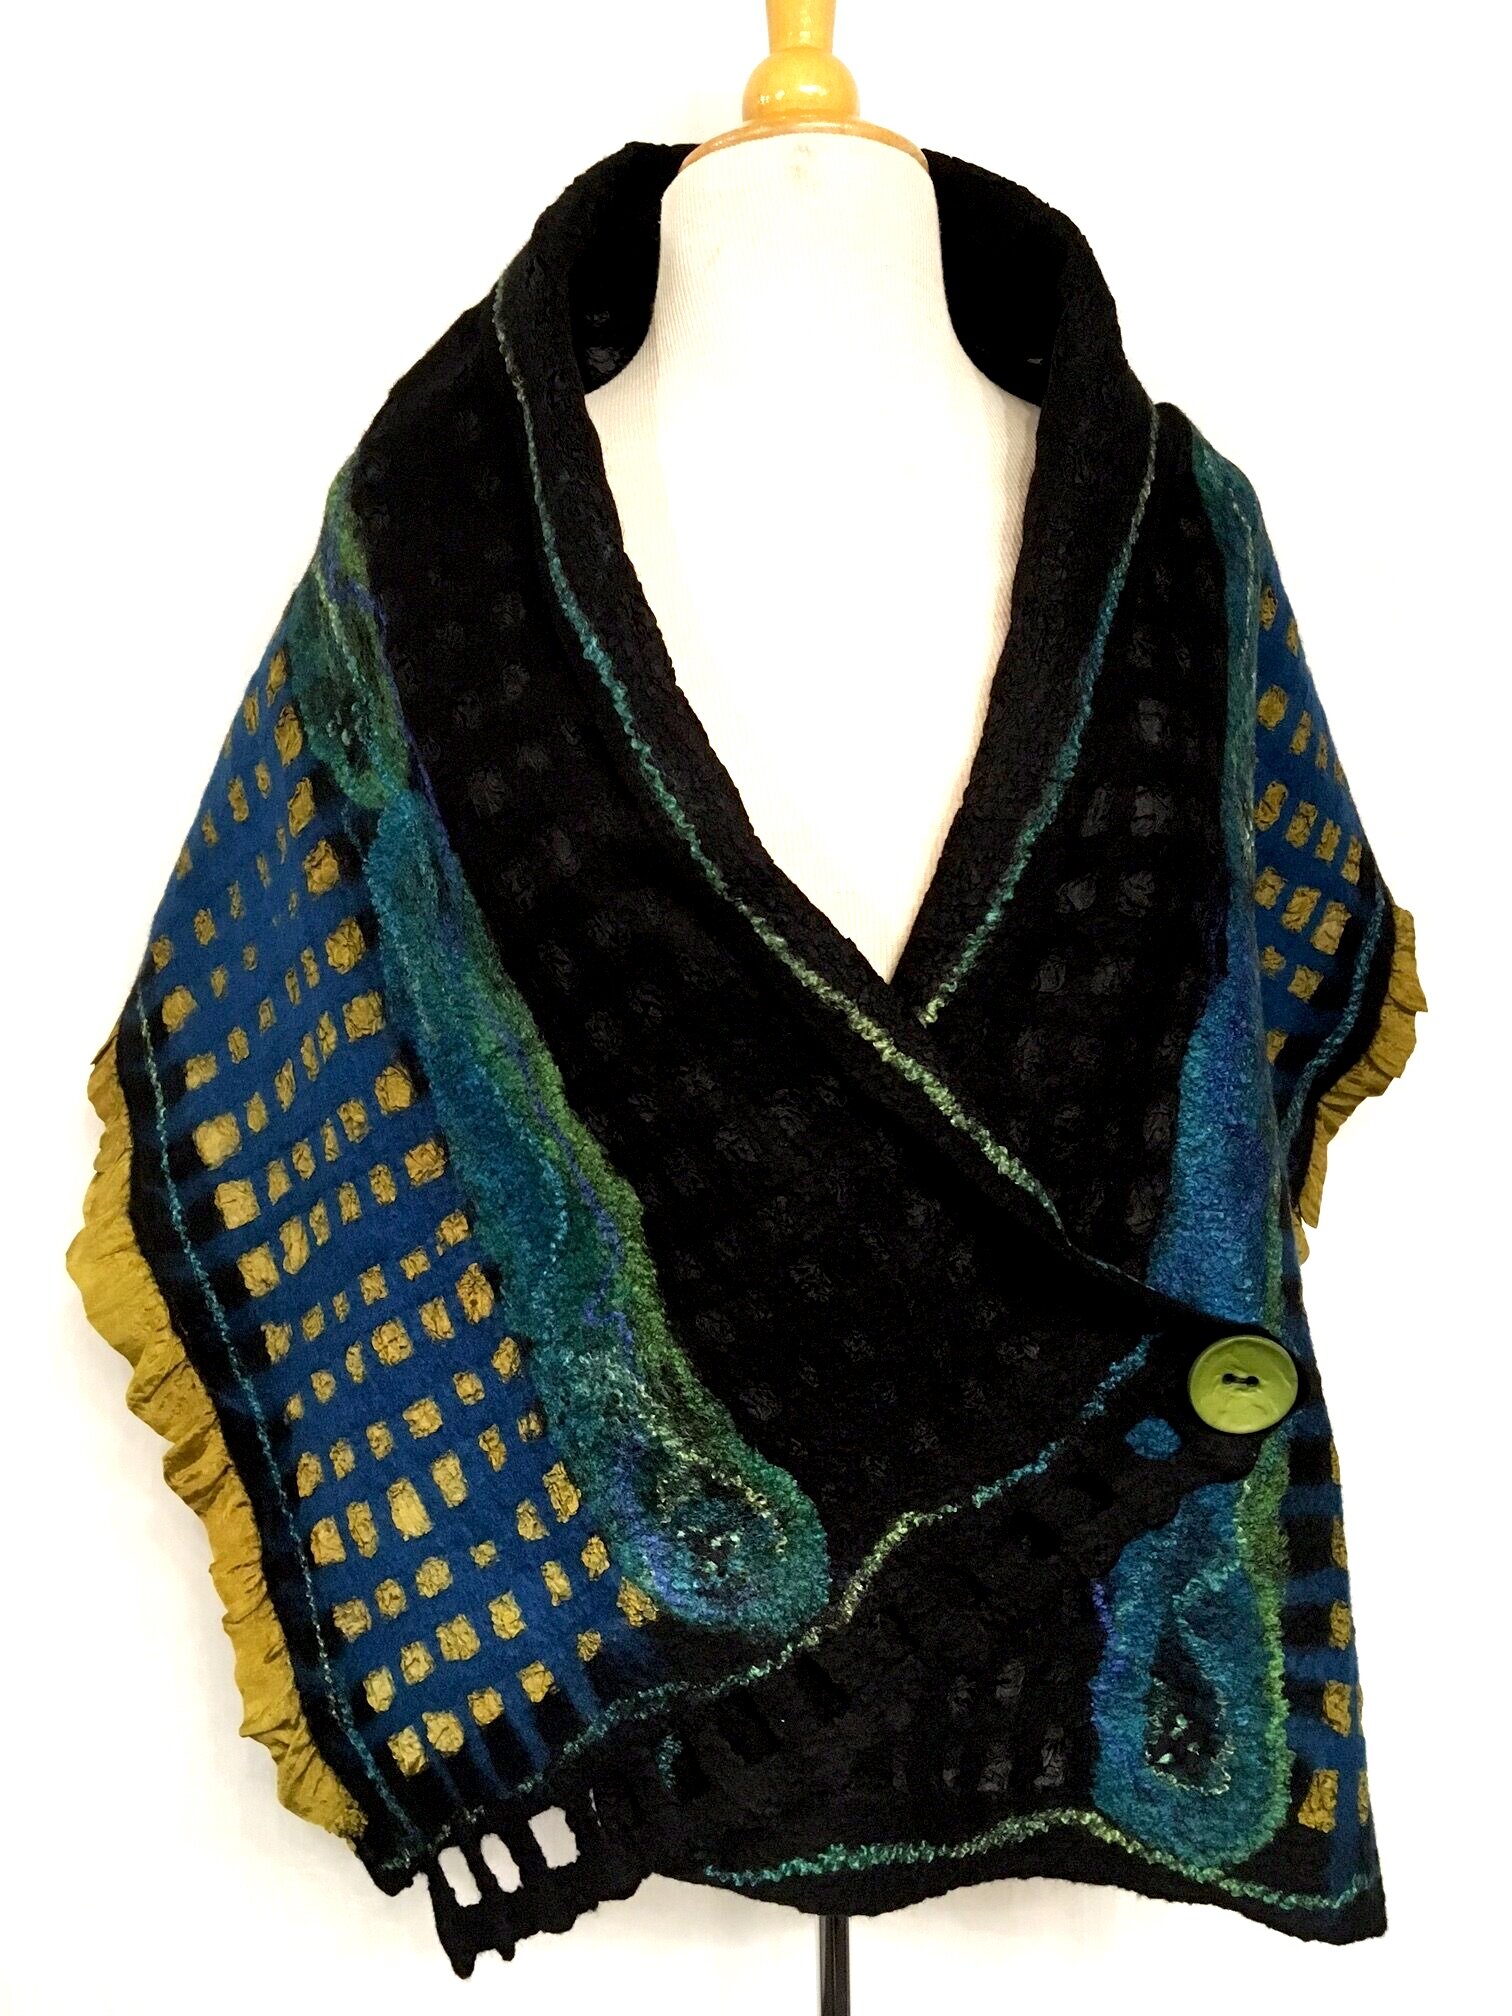 Shawl: $350, 16"x59", Nuno felt, silk & wool